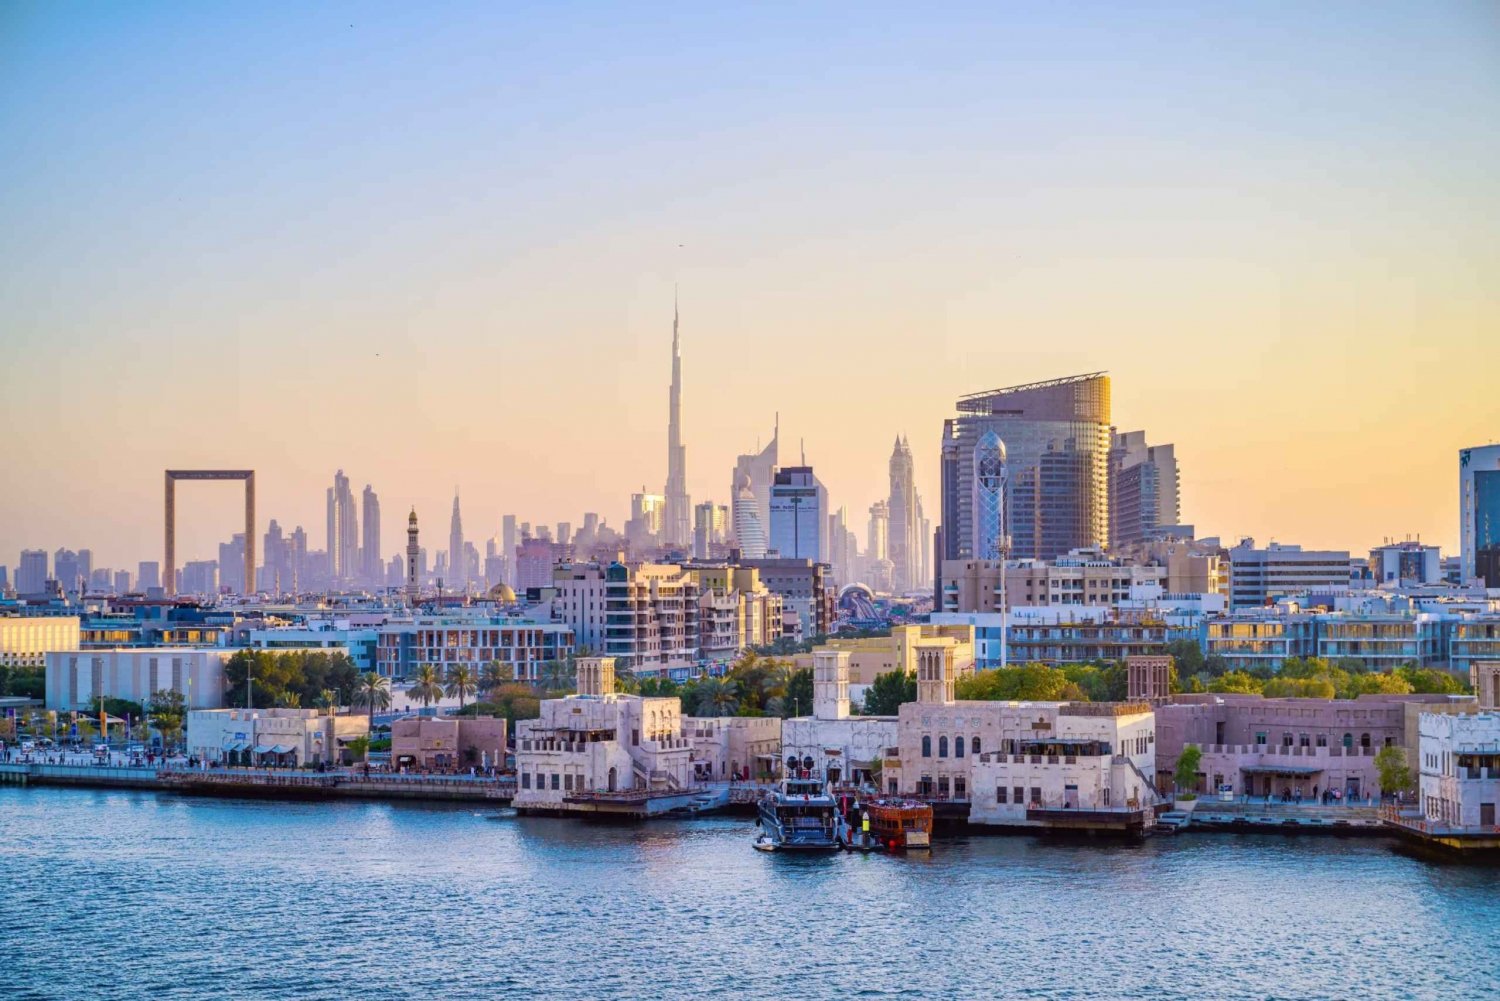 Det gamle Dubai: Vandretur med bådtur, souks og museer